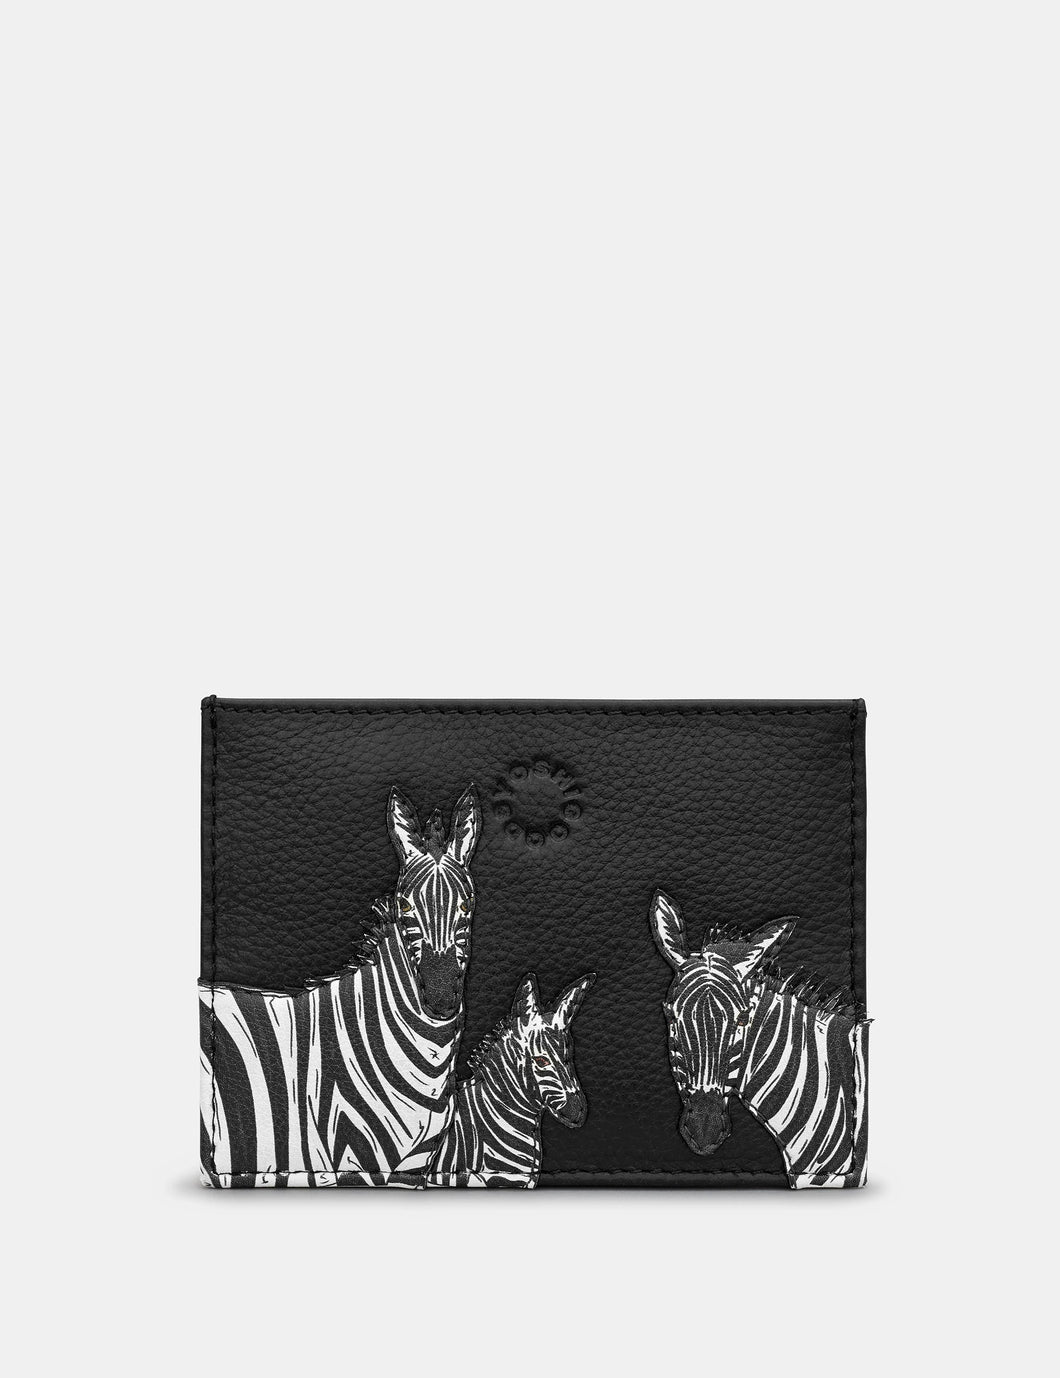 Yoshi Zebra Leather Card Holder